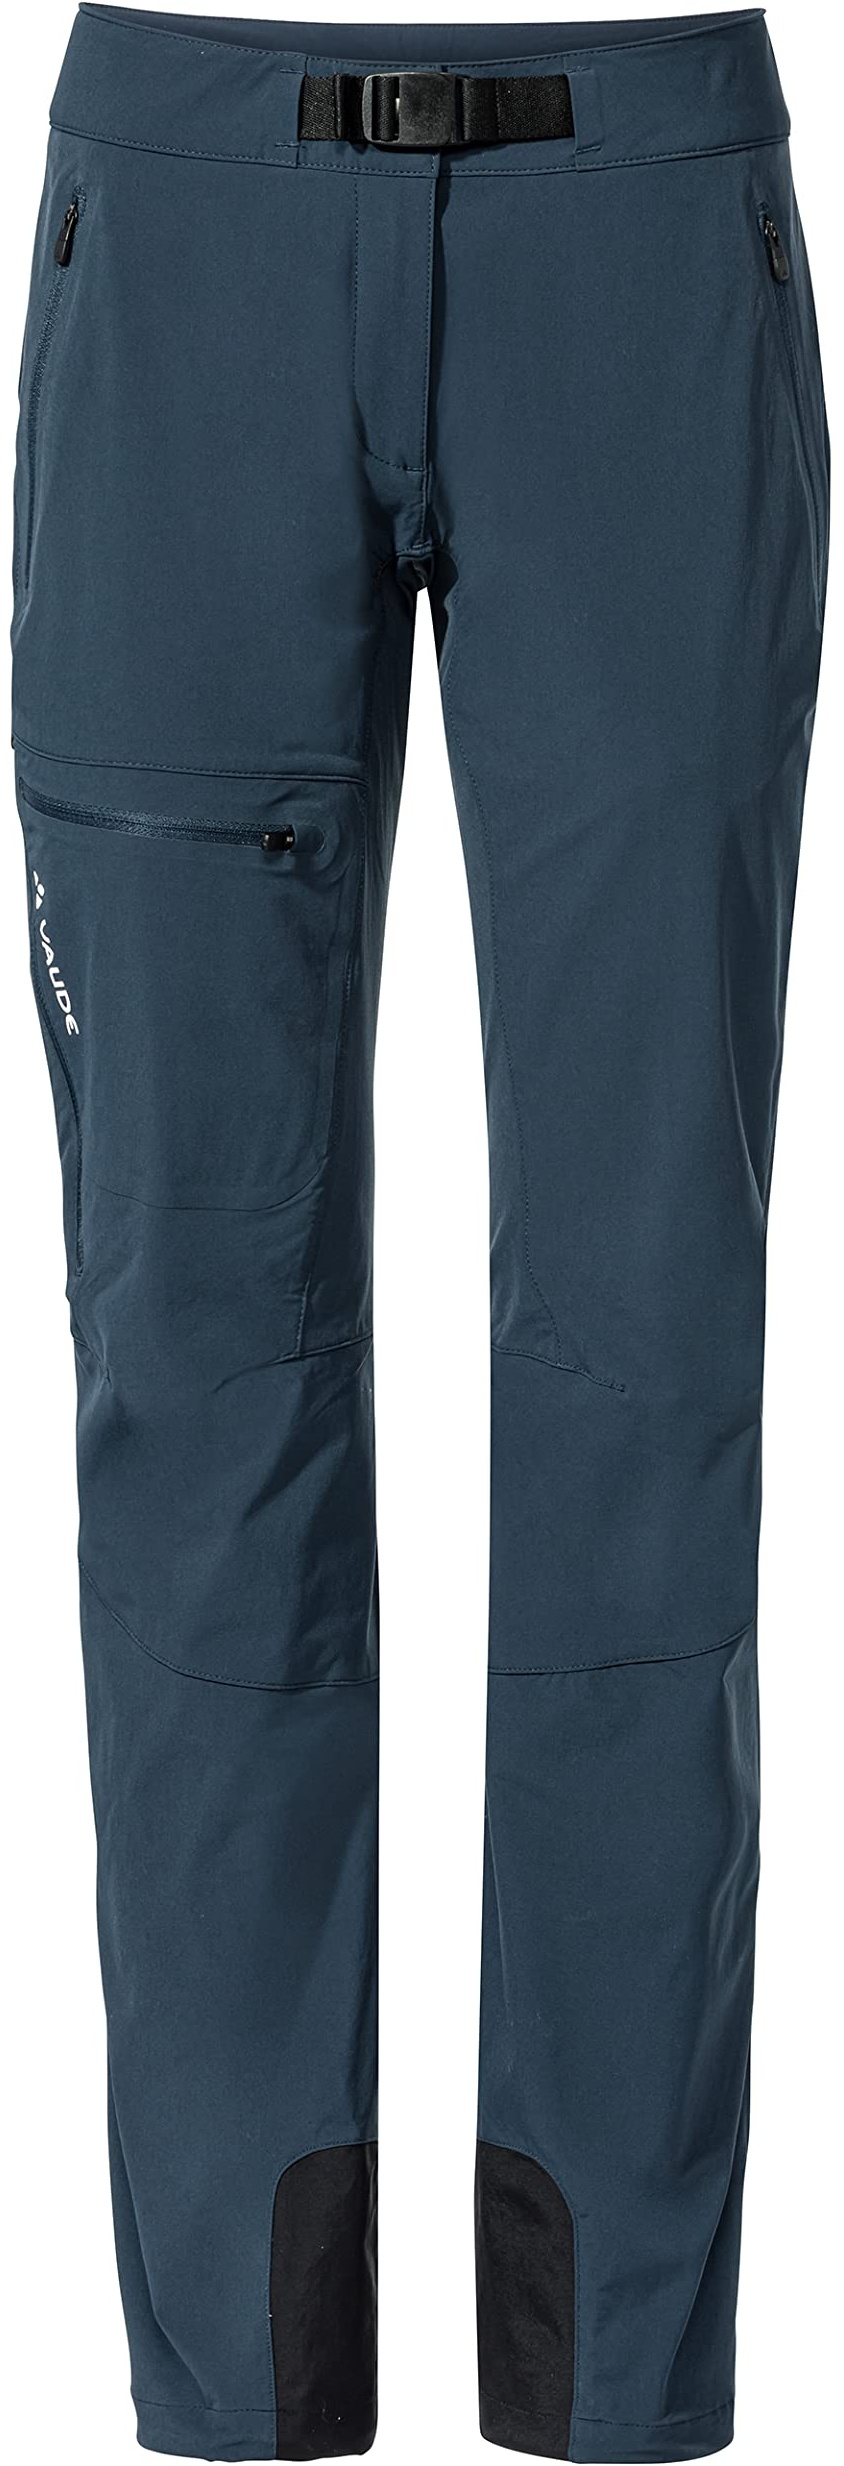 VAUDE Outdoorhose Badile Pants II - Wanderhose Damen mit Stretch, leichte, robuste & atmungsaktive Trekkinghose Damen für hohe Bewegungsfreiheit - dunkel-blau, Gr. 38